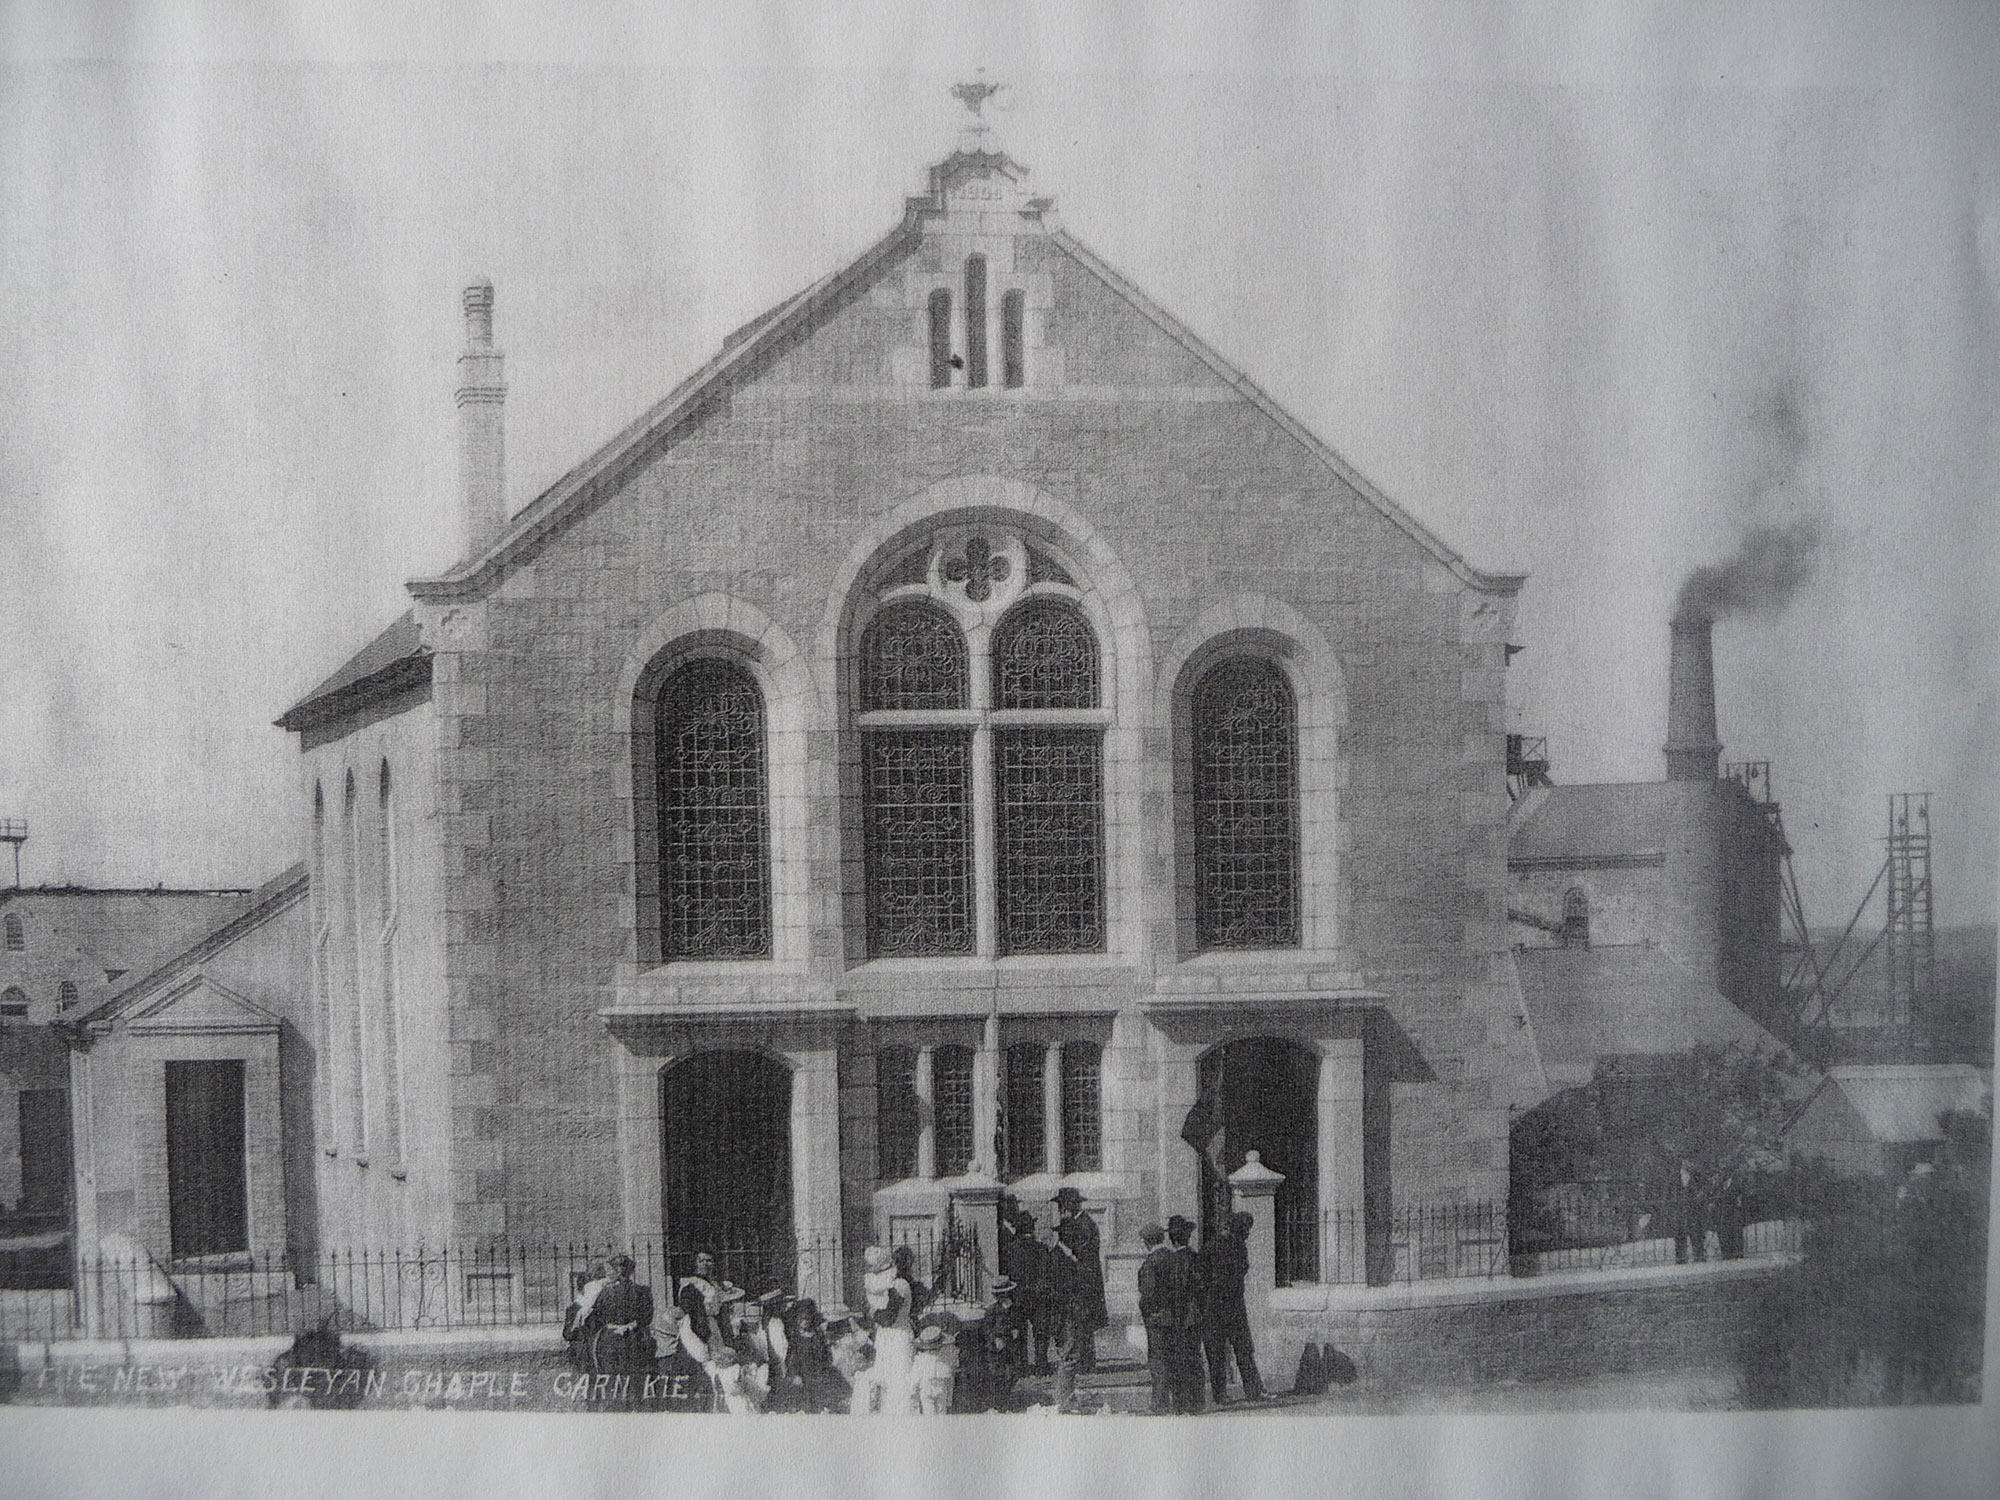 carnkie-wesleyan-chapel